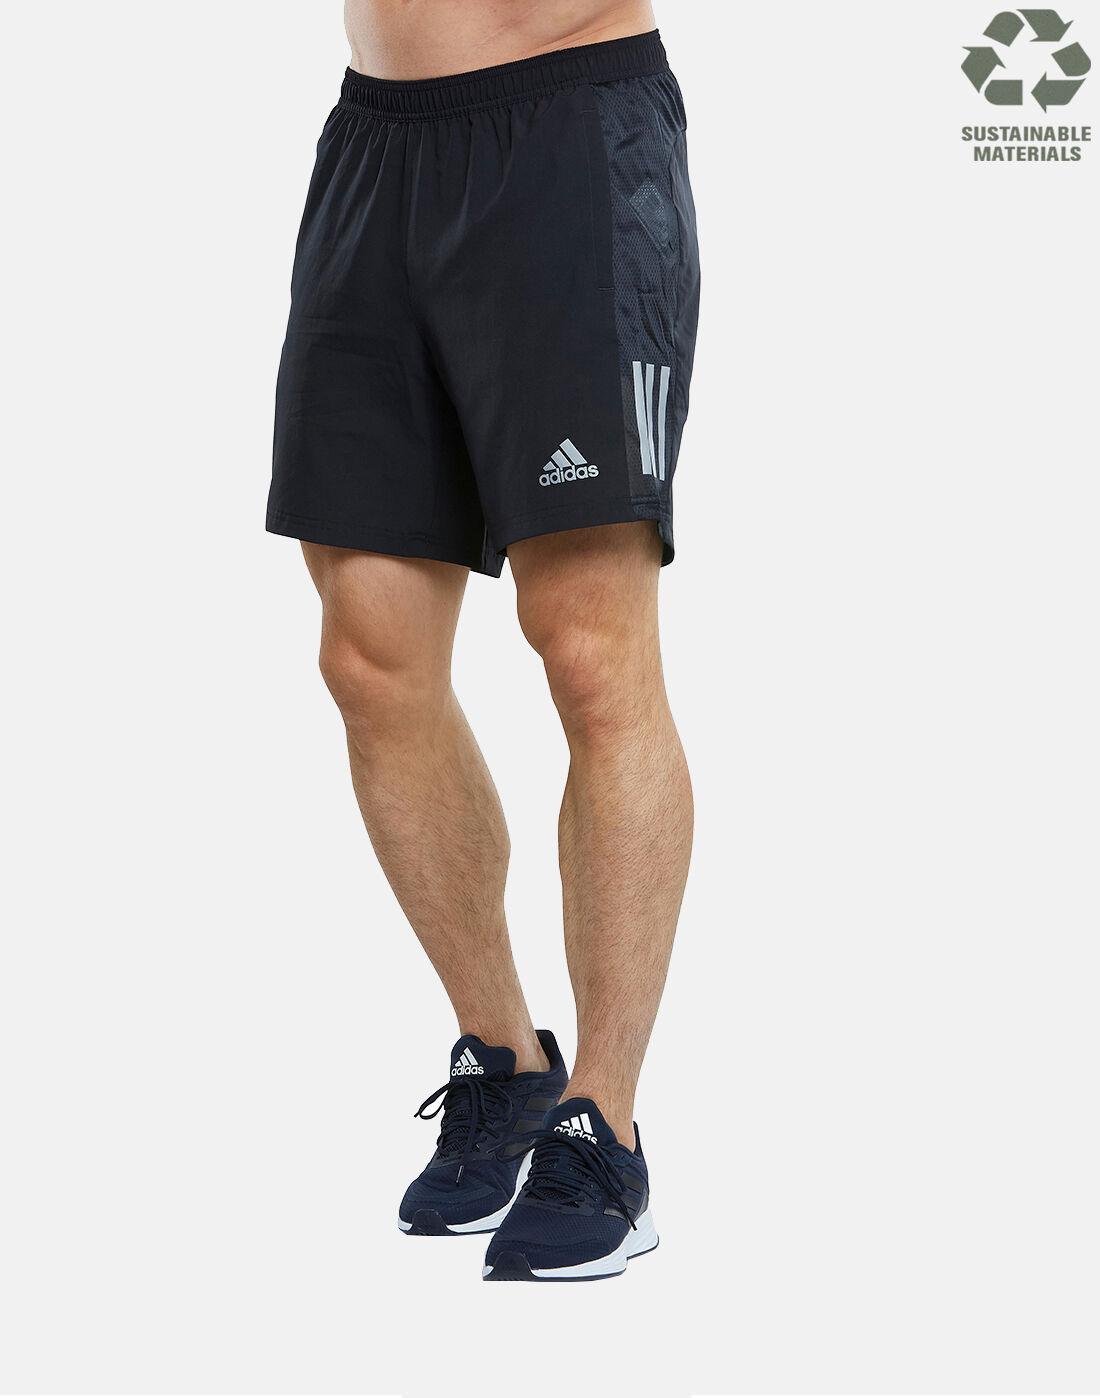 men's adidas run it shorts